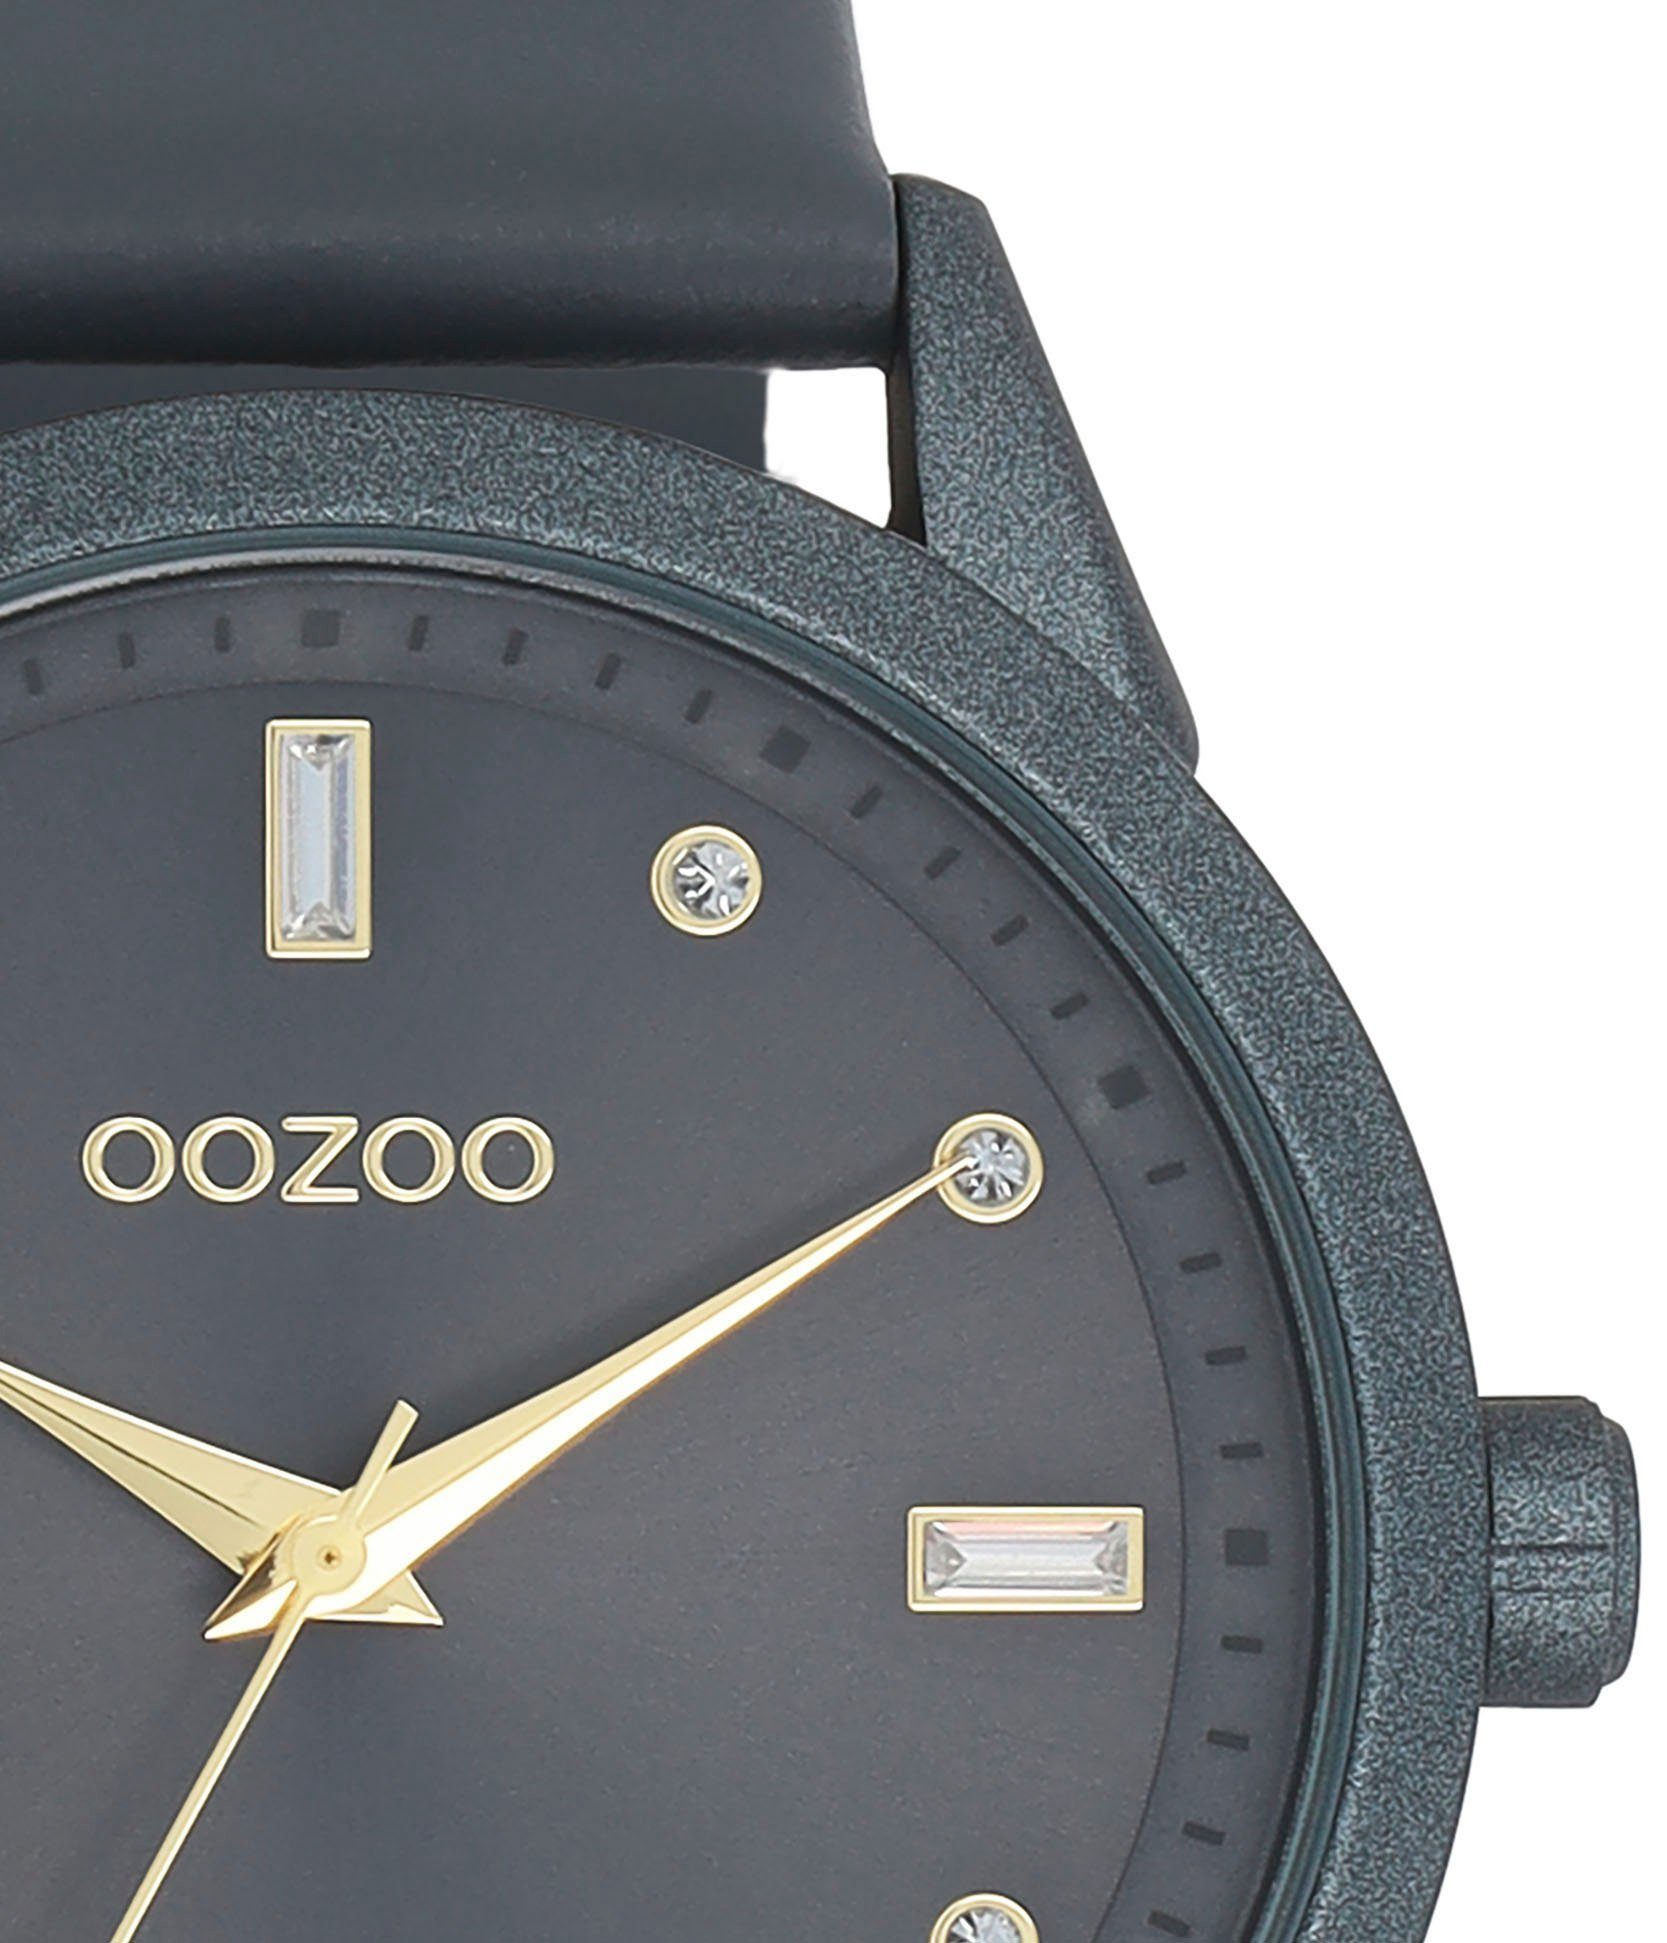 Quarzuhr OOZOO C11289